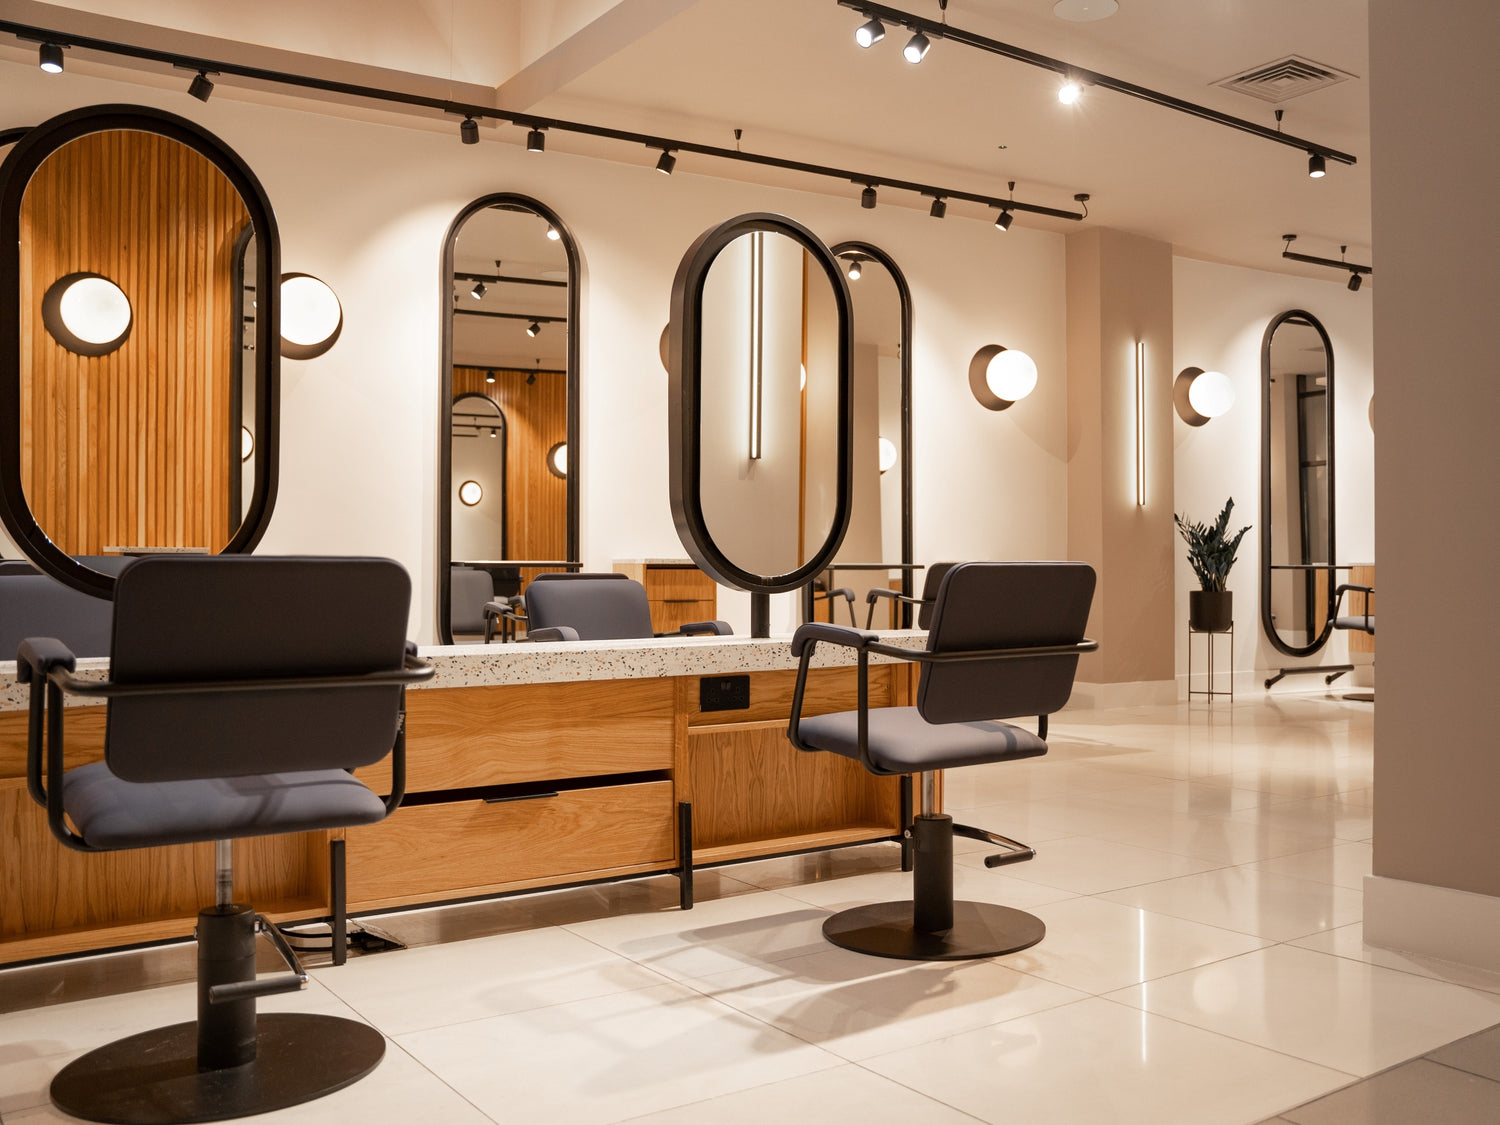 Collinge & Co Castle Street Salon Hairdressing Station